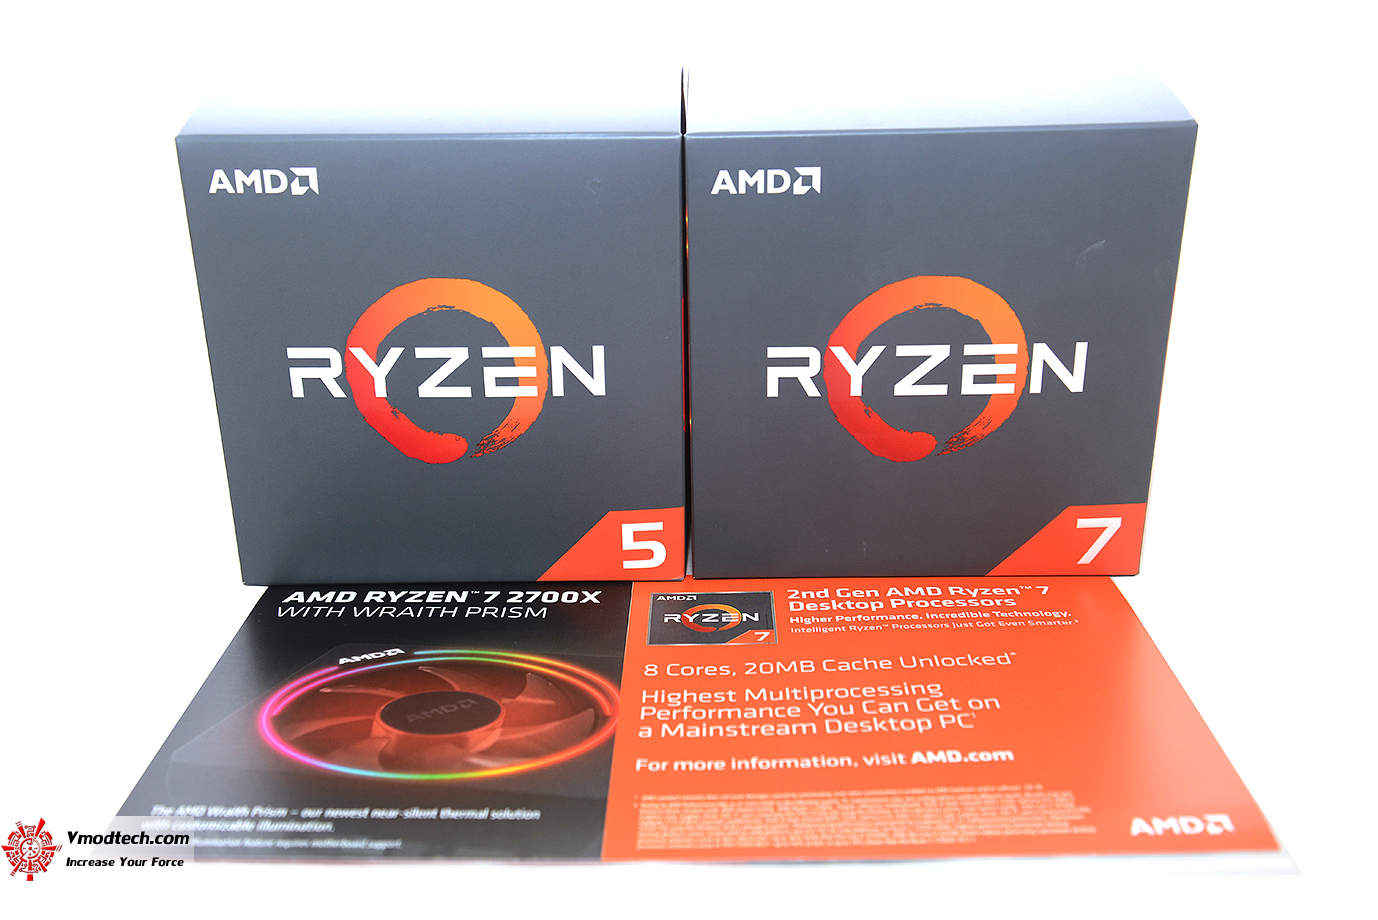 dsc 09441 Unbox AMD RYZEN 7 2700X & AMD RYZEN 5 2600X Preview   